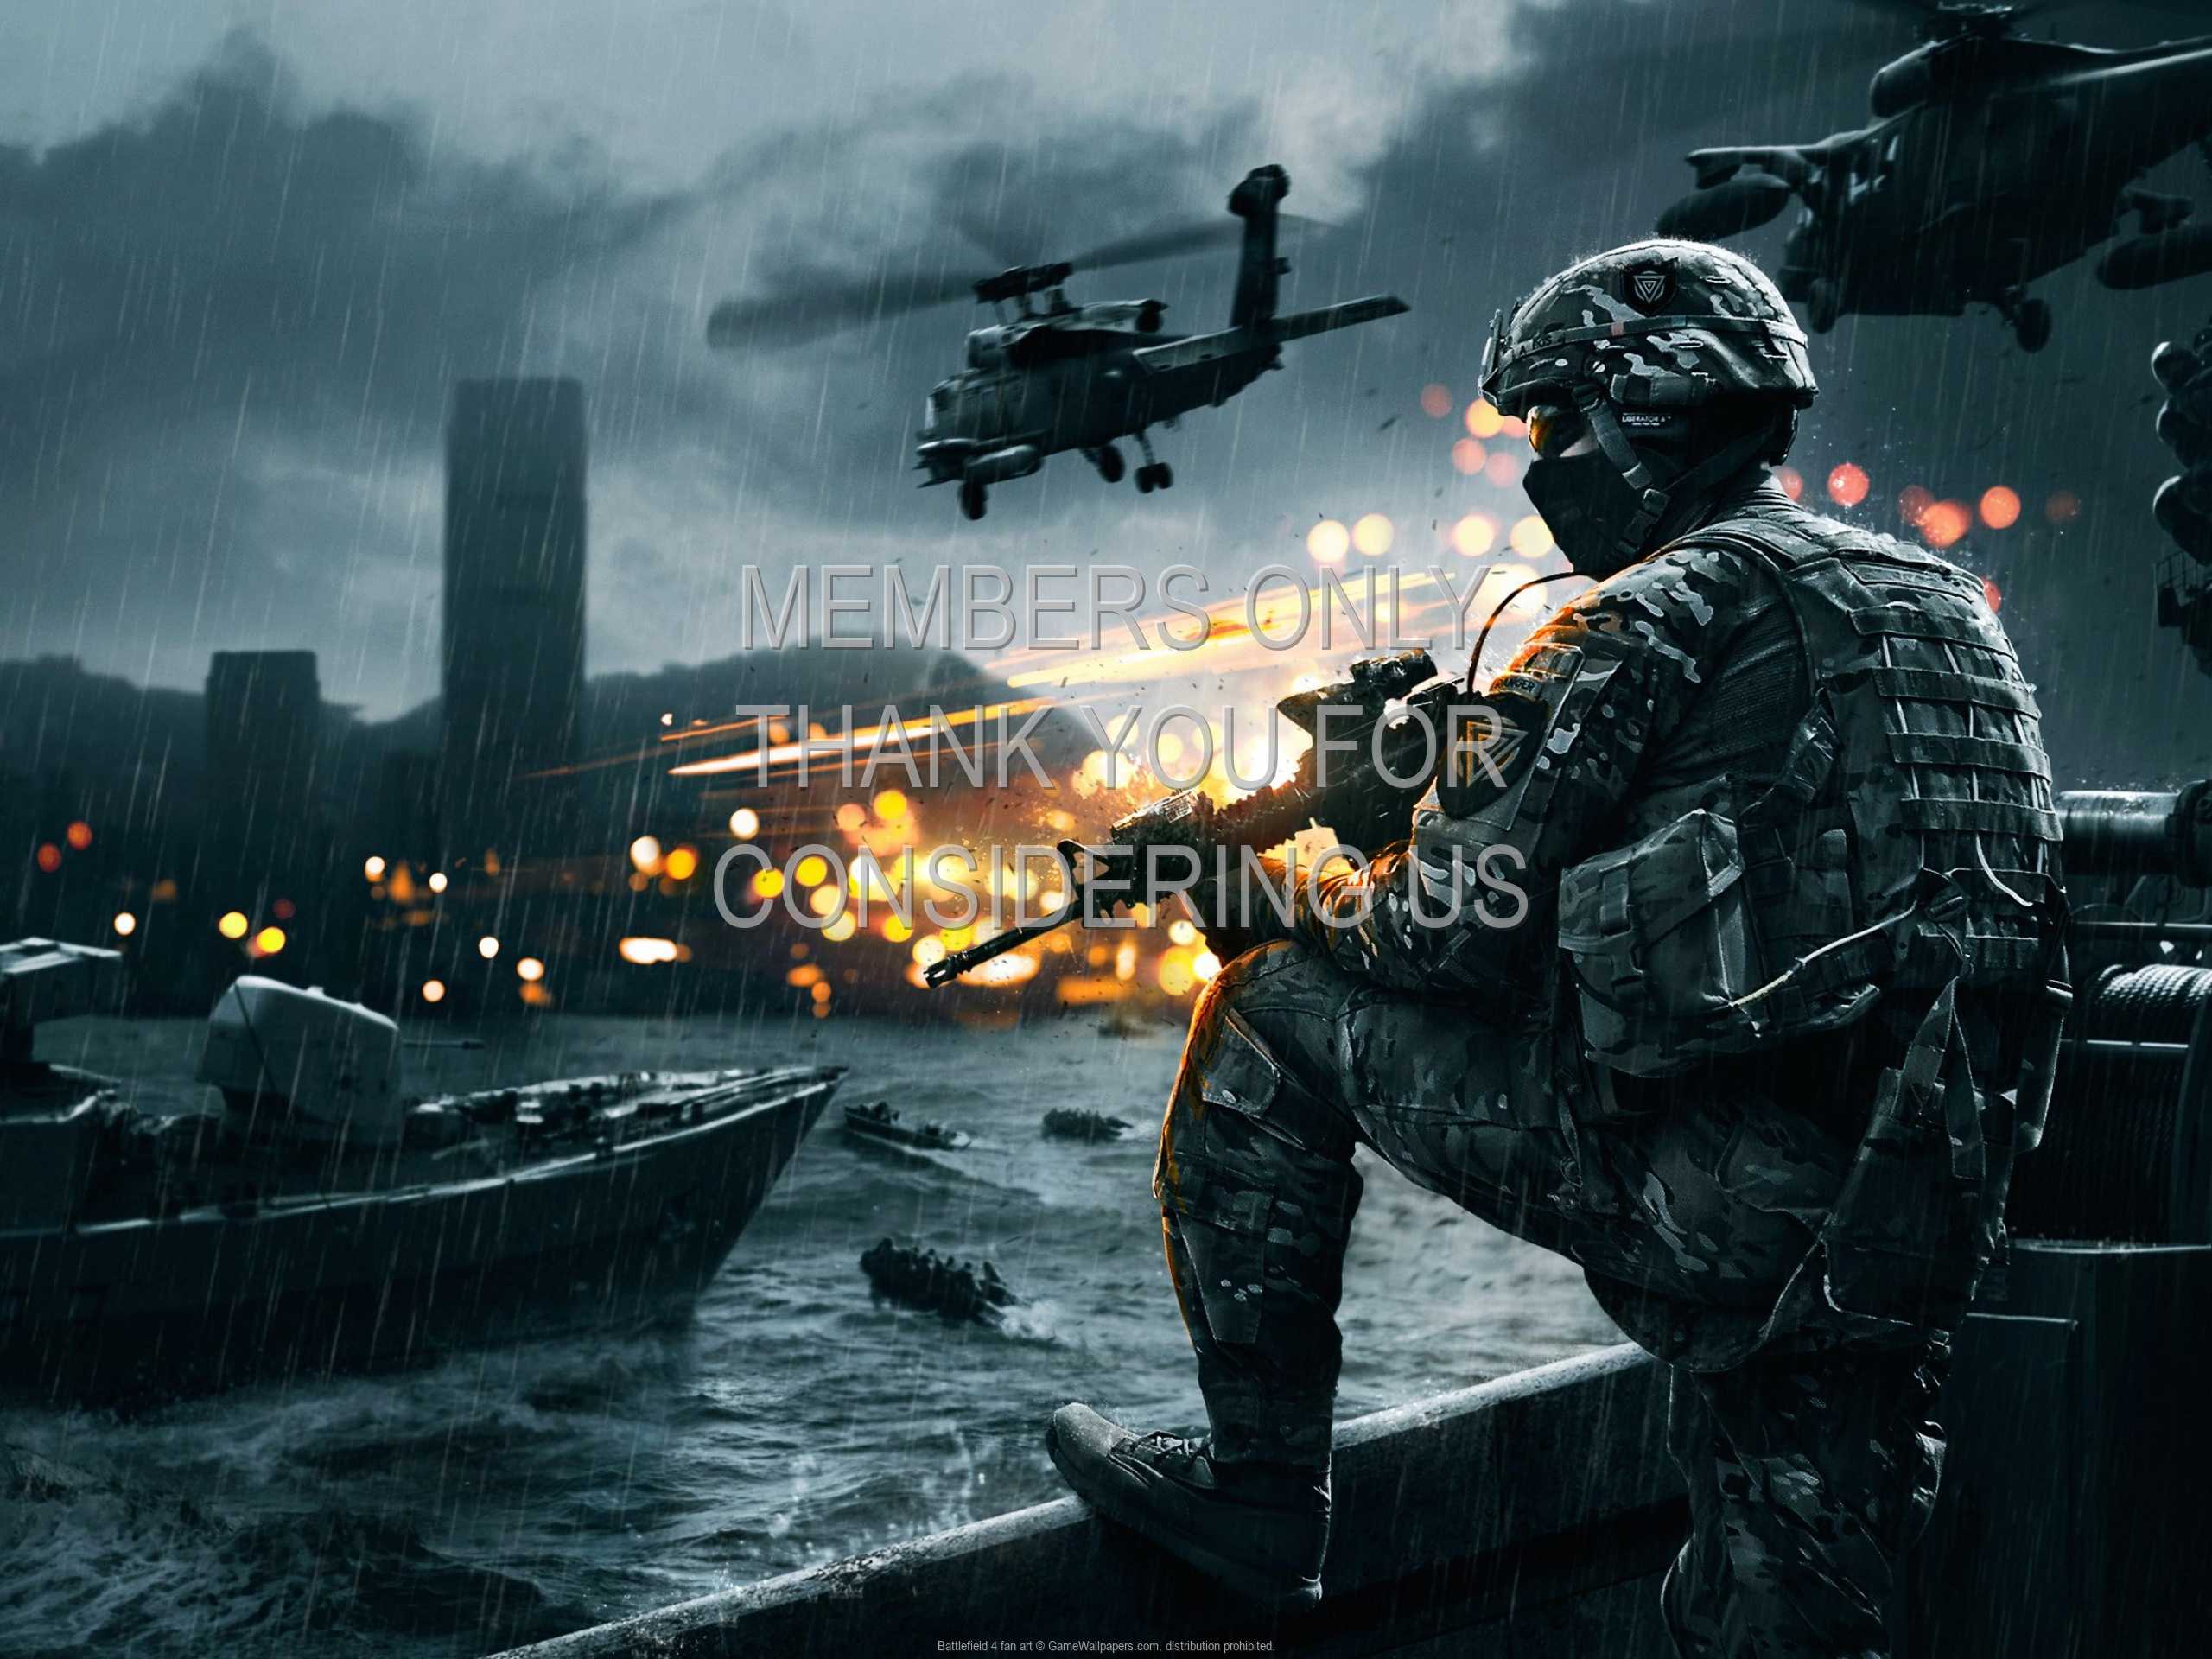 Battlefield 4 fan art 1080p%20Horizontal Mobile wallpaper or background 01